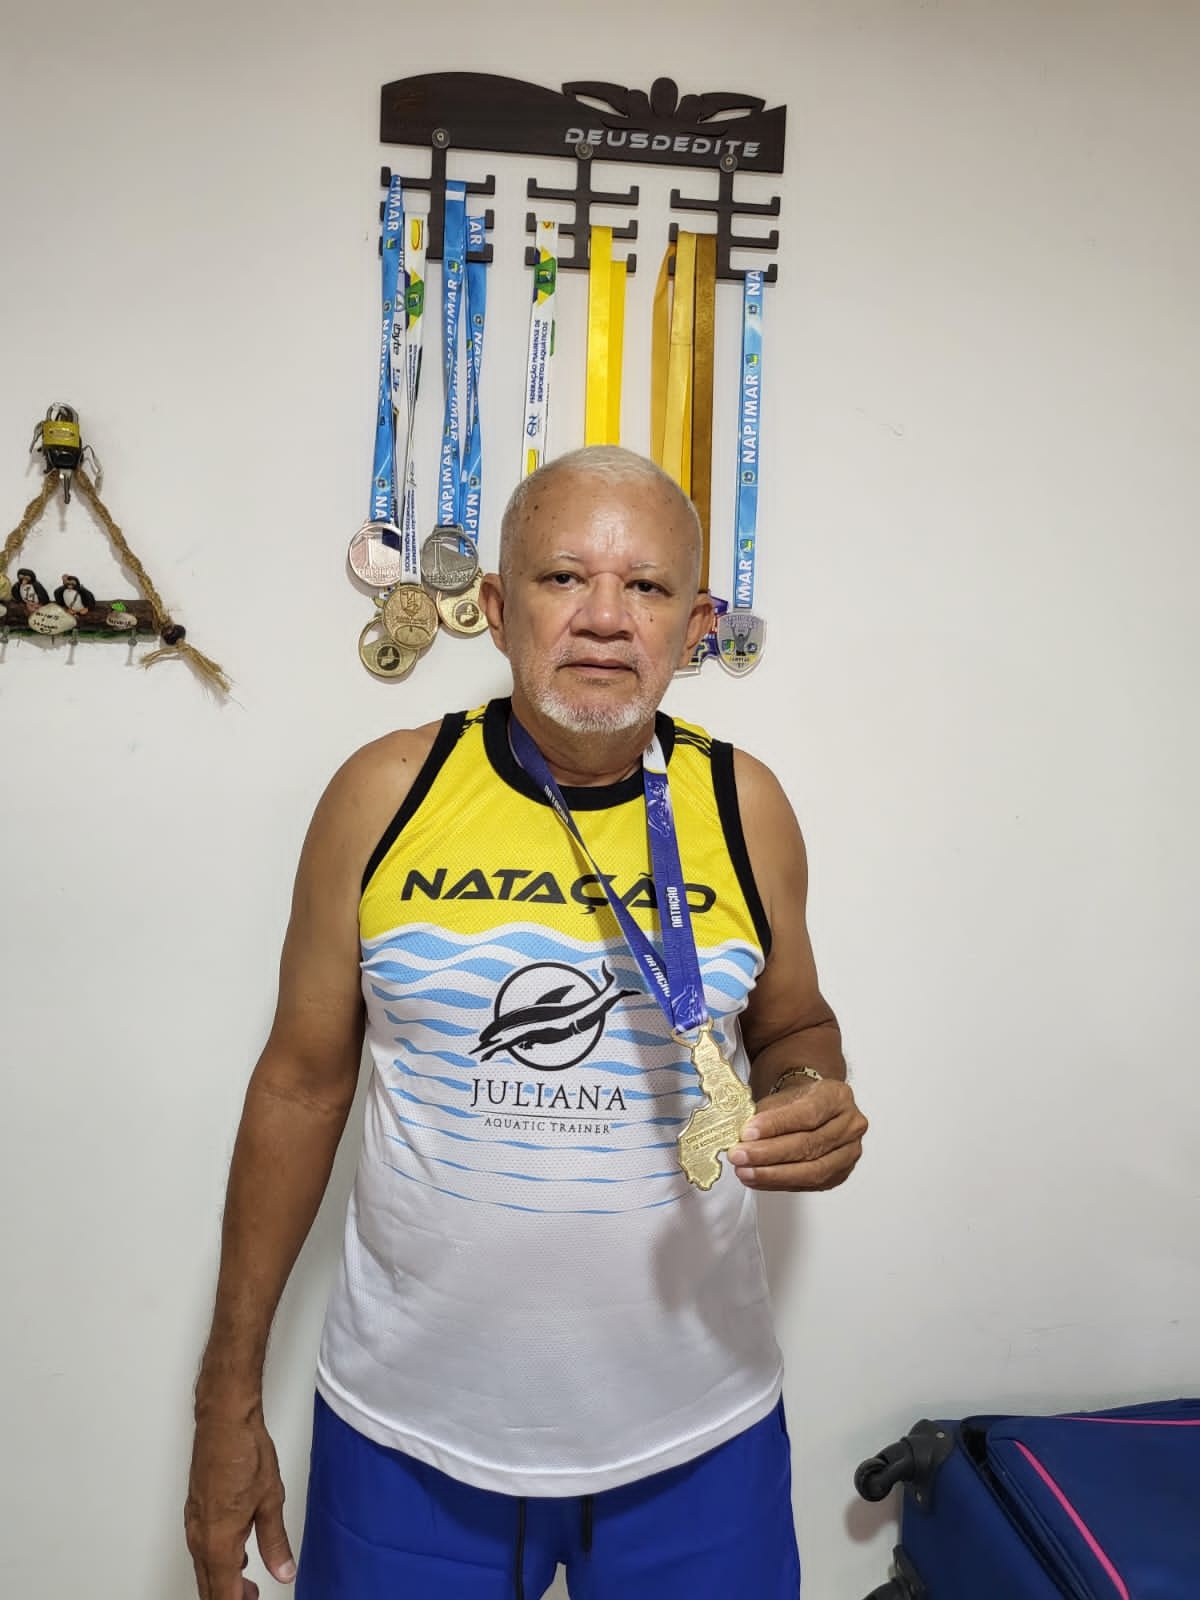 Atleta de natação Deusdedite, 70 anos e 18 medalhas conquistadas.